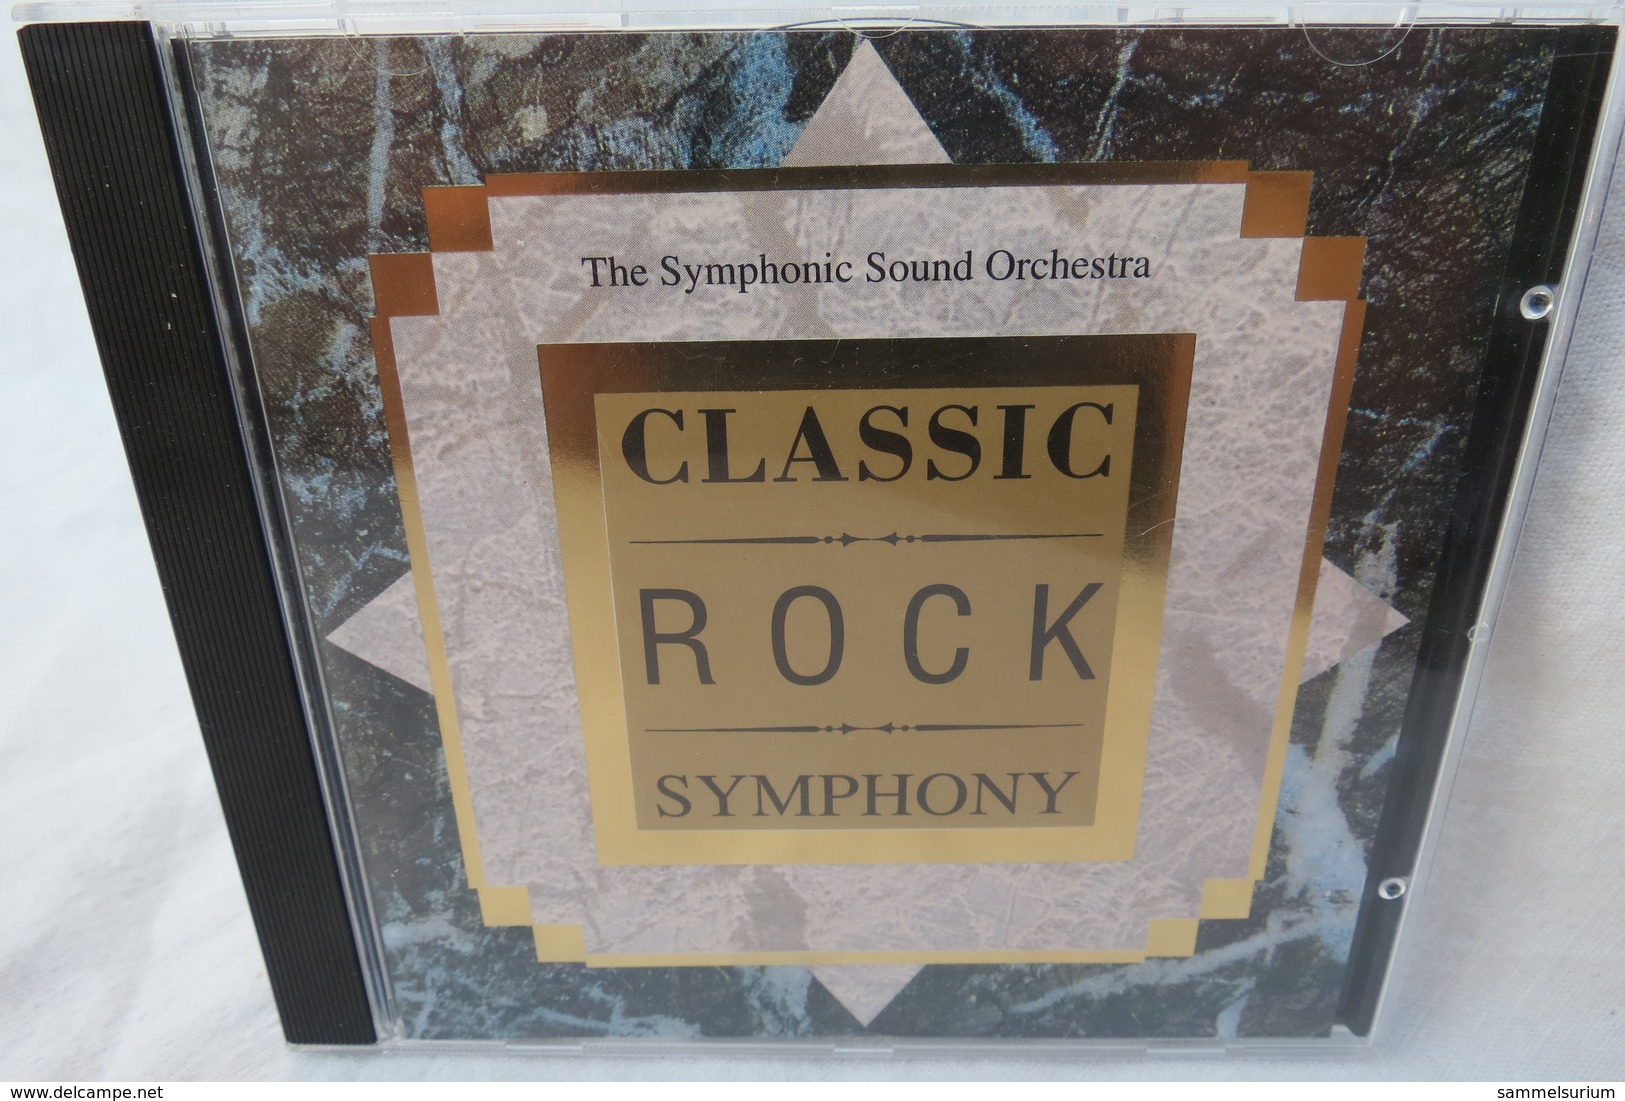 CD "Classic Rock Symphony" The Symphonic Sound Orchestra - Strumentali